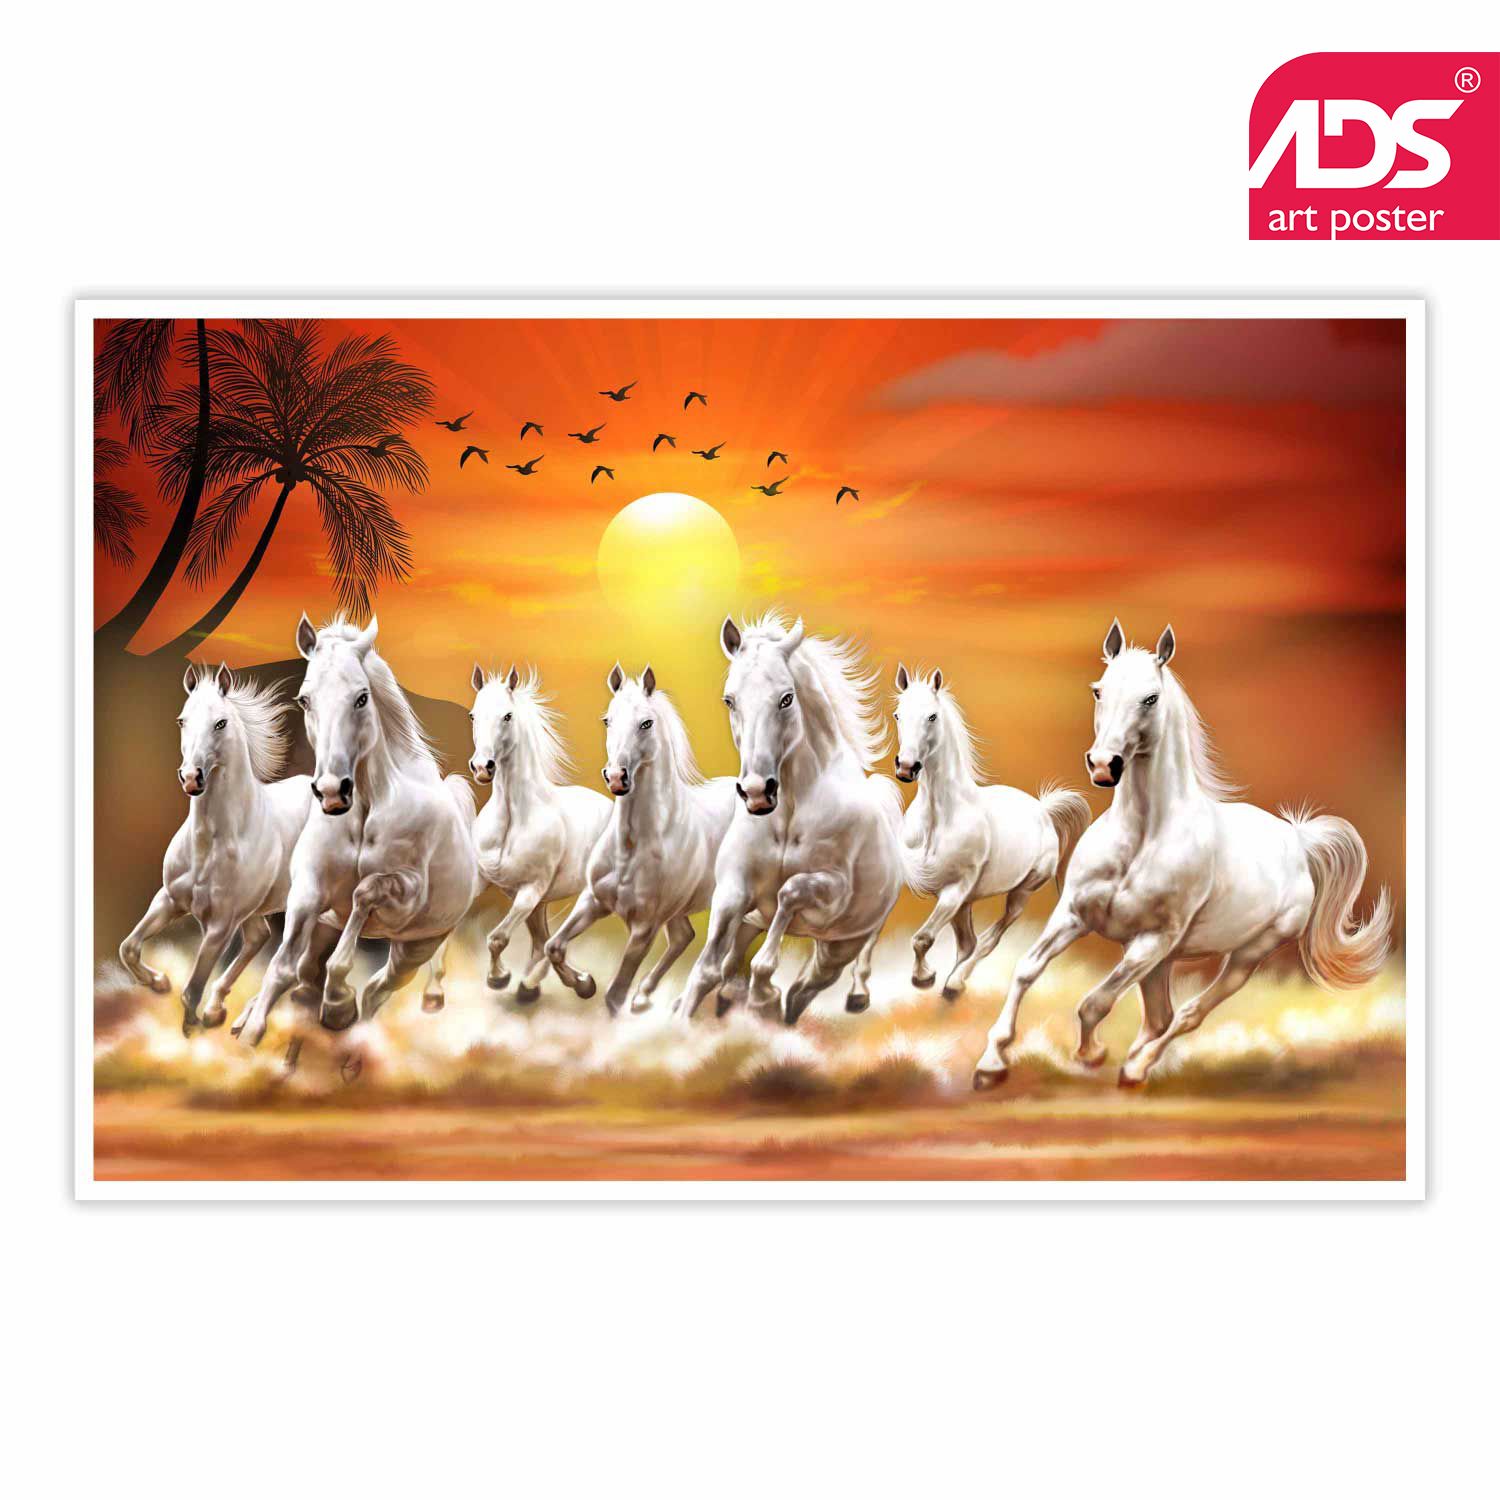 Horse Running - 1500x1500 Wallpaper 